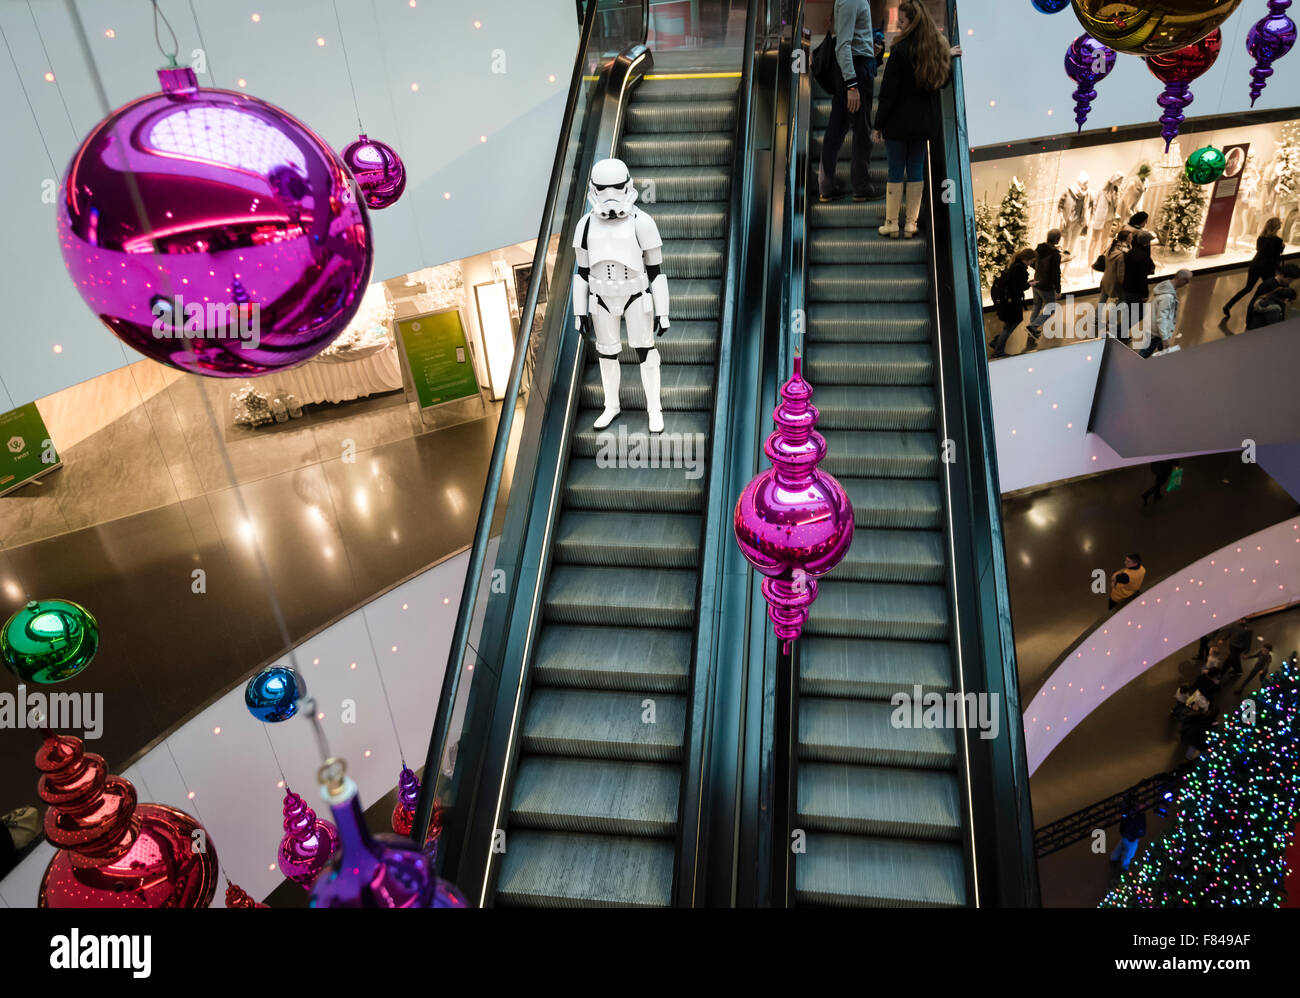 Zürich, Schweiz. 5. Dezember 2015. Während einer Promotion-Veranstaltung  für den neuen kommenden Star Wars-Film in einem Einkaufszentrum in Zürich  nimmt eine kostümierte Star Wars imperiale Sturmtruppen eine Auszeit auf  der Rolltreppe. Bildnachweis: